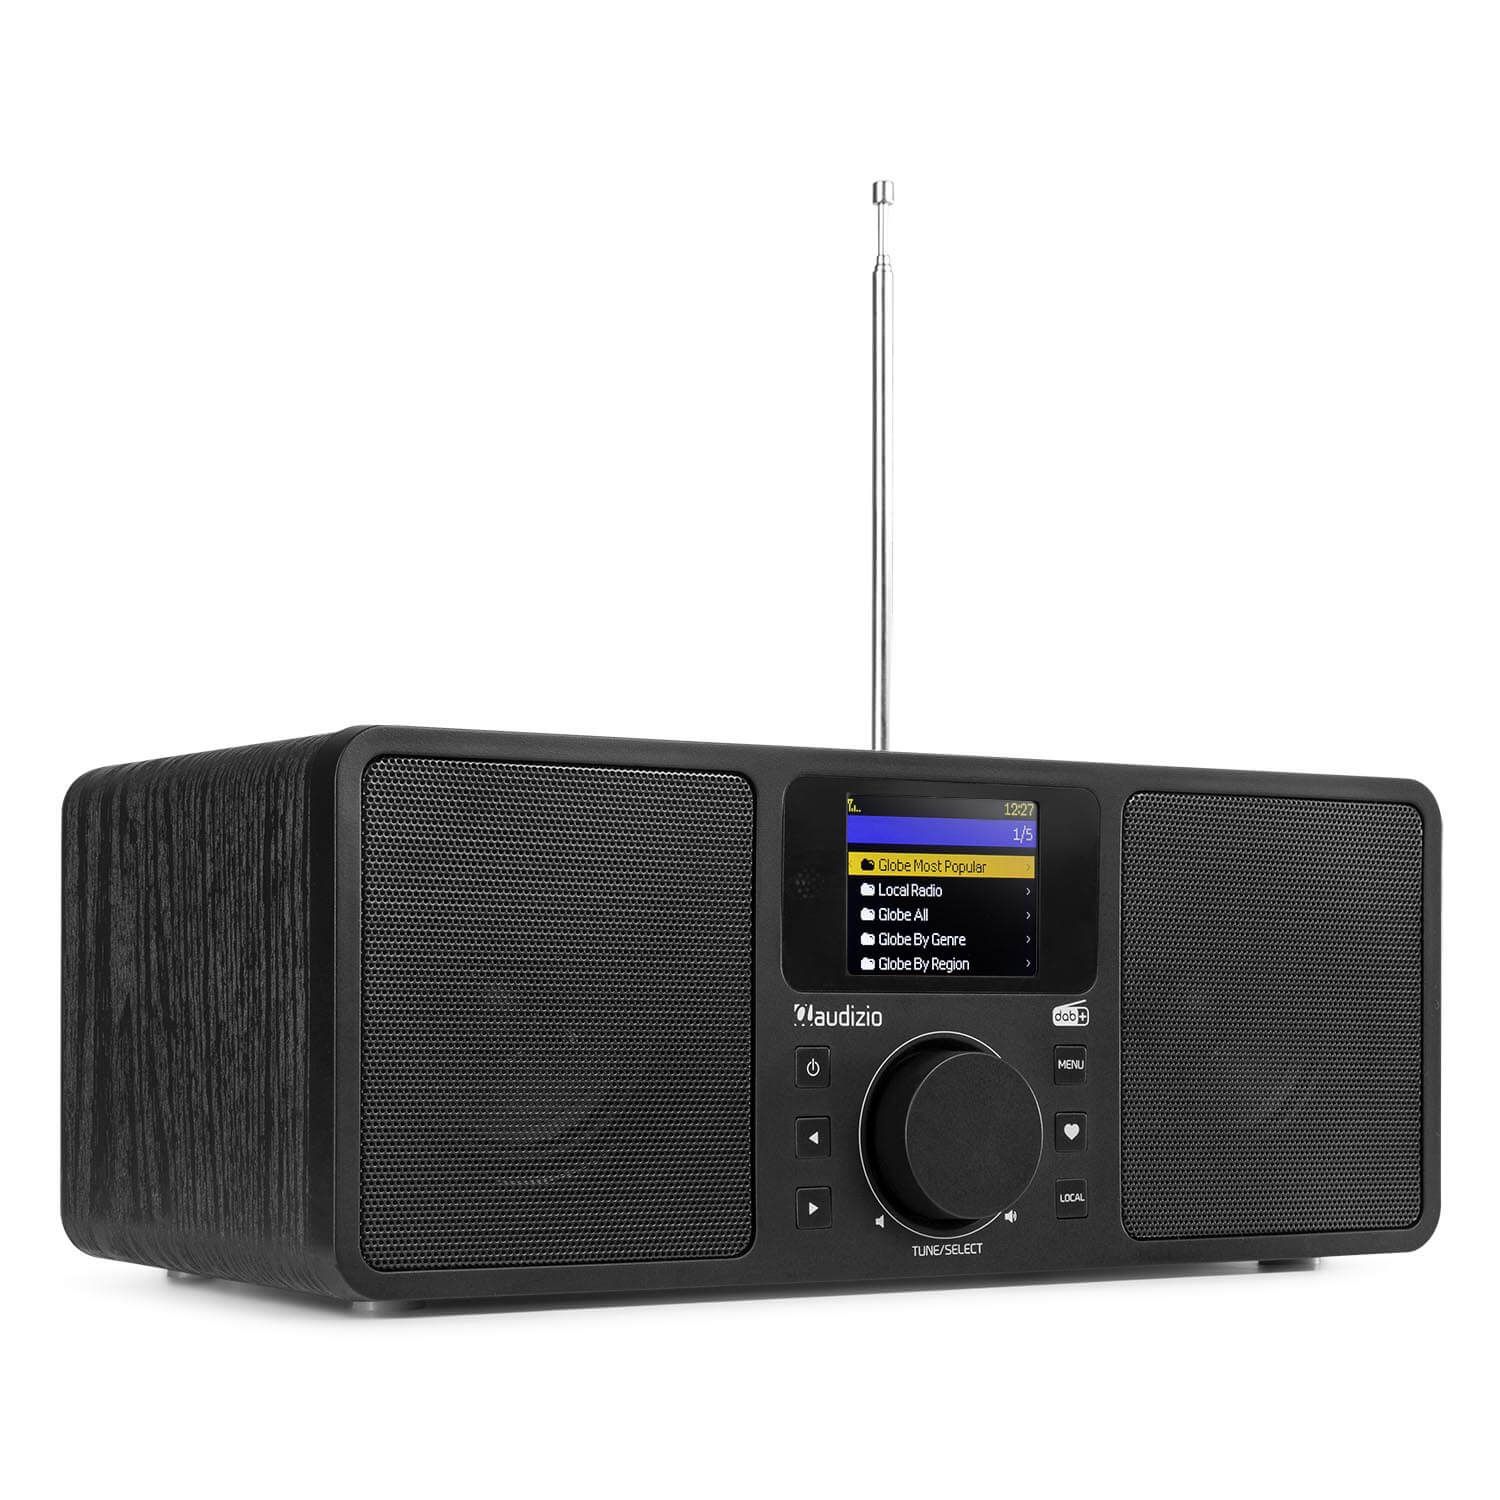 Beeldhouwwerk sympathie rijst Audizio Rome DAB radio, internet radio met wifi + Bluetooth - Zwart kopen?